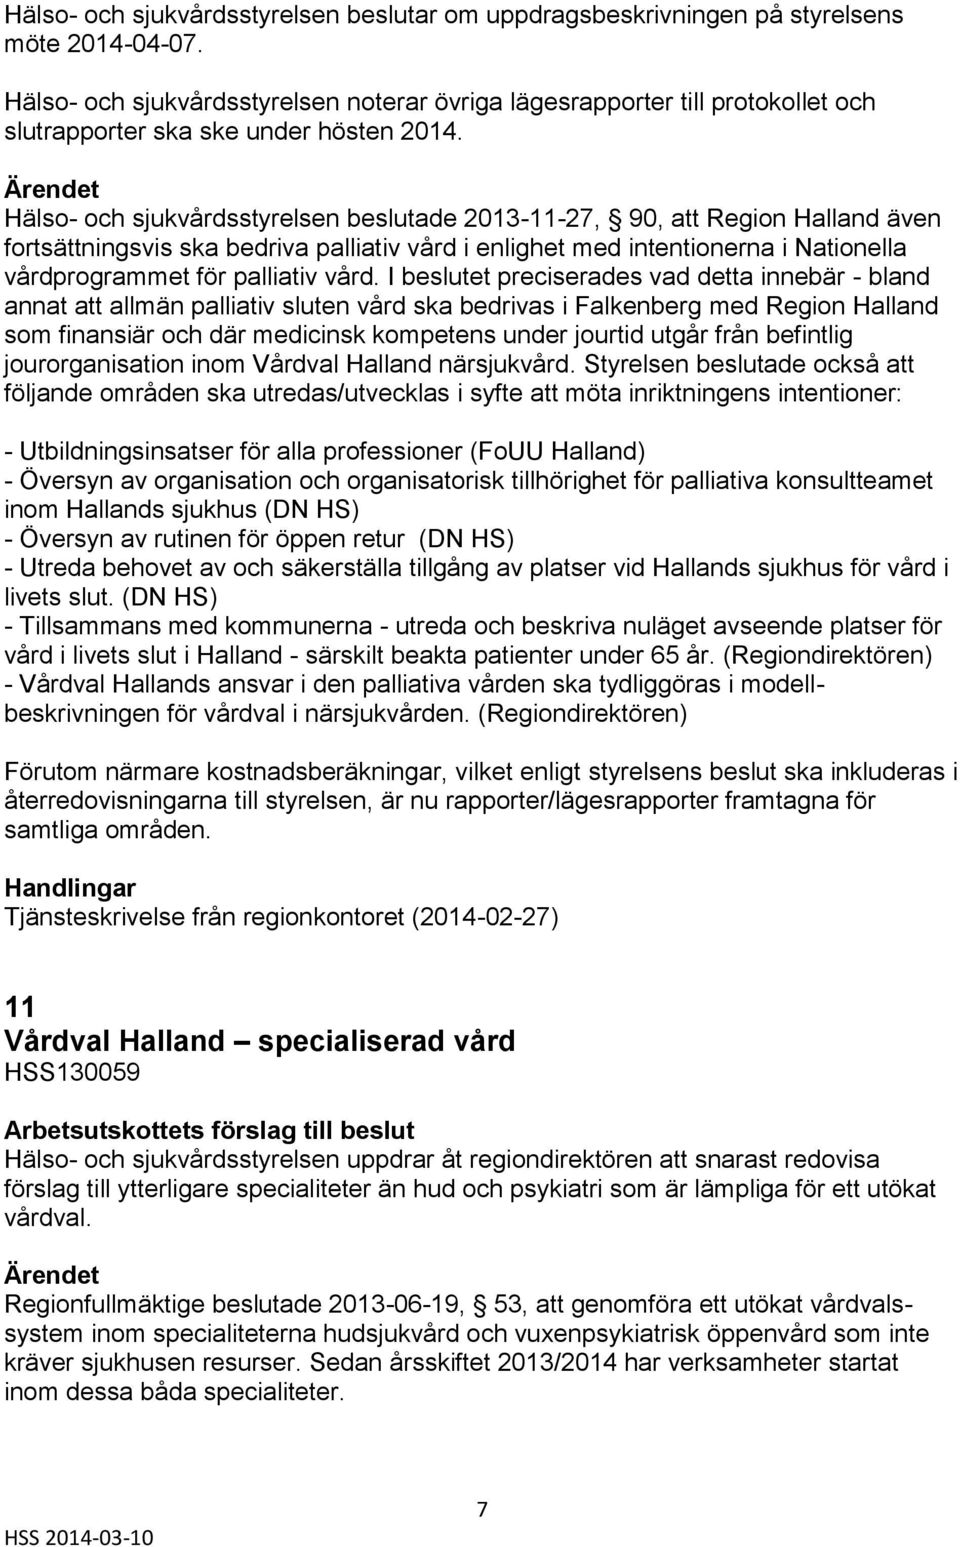 Hälso- och sjukvårdsstyrelsen beslutade 2013-11-27, 90, att Region Halland även fortsättningsvis ska bedriva palliativ vård i enlighet med intentionerna i Nationella vårdprogrammet för palliativ vård.